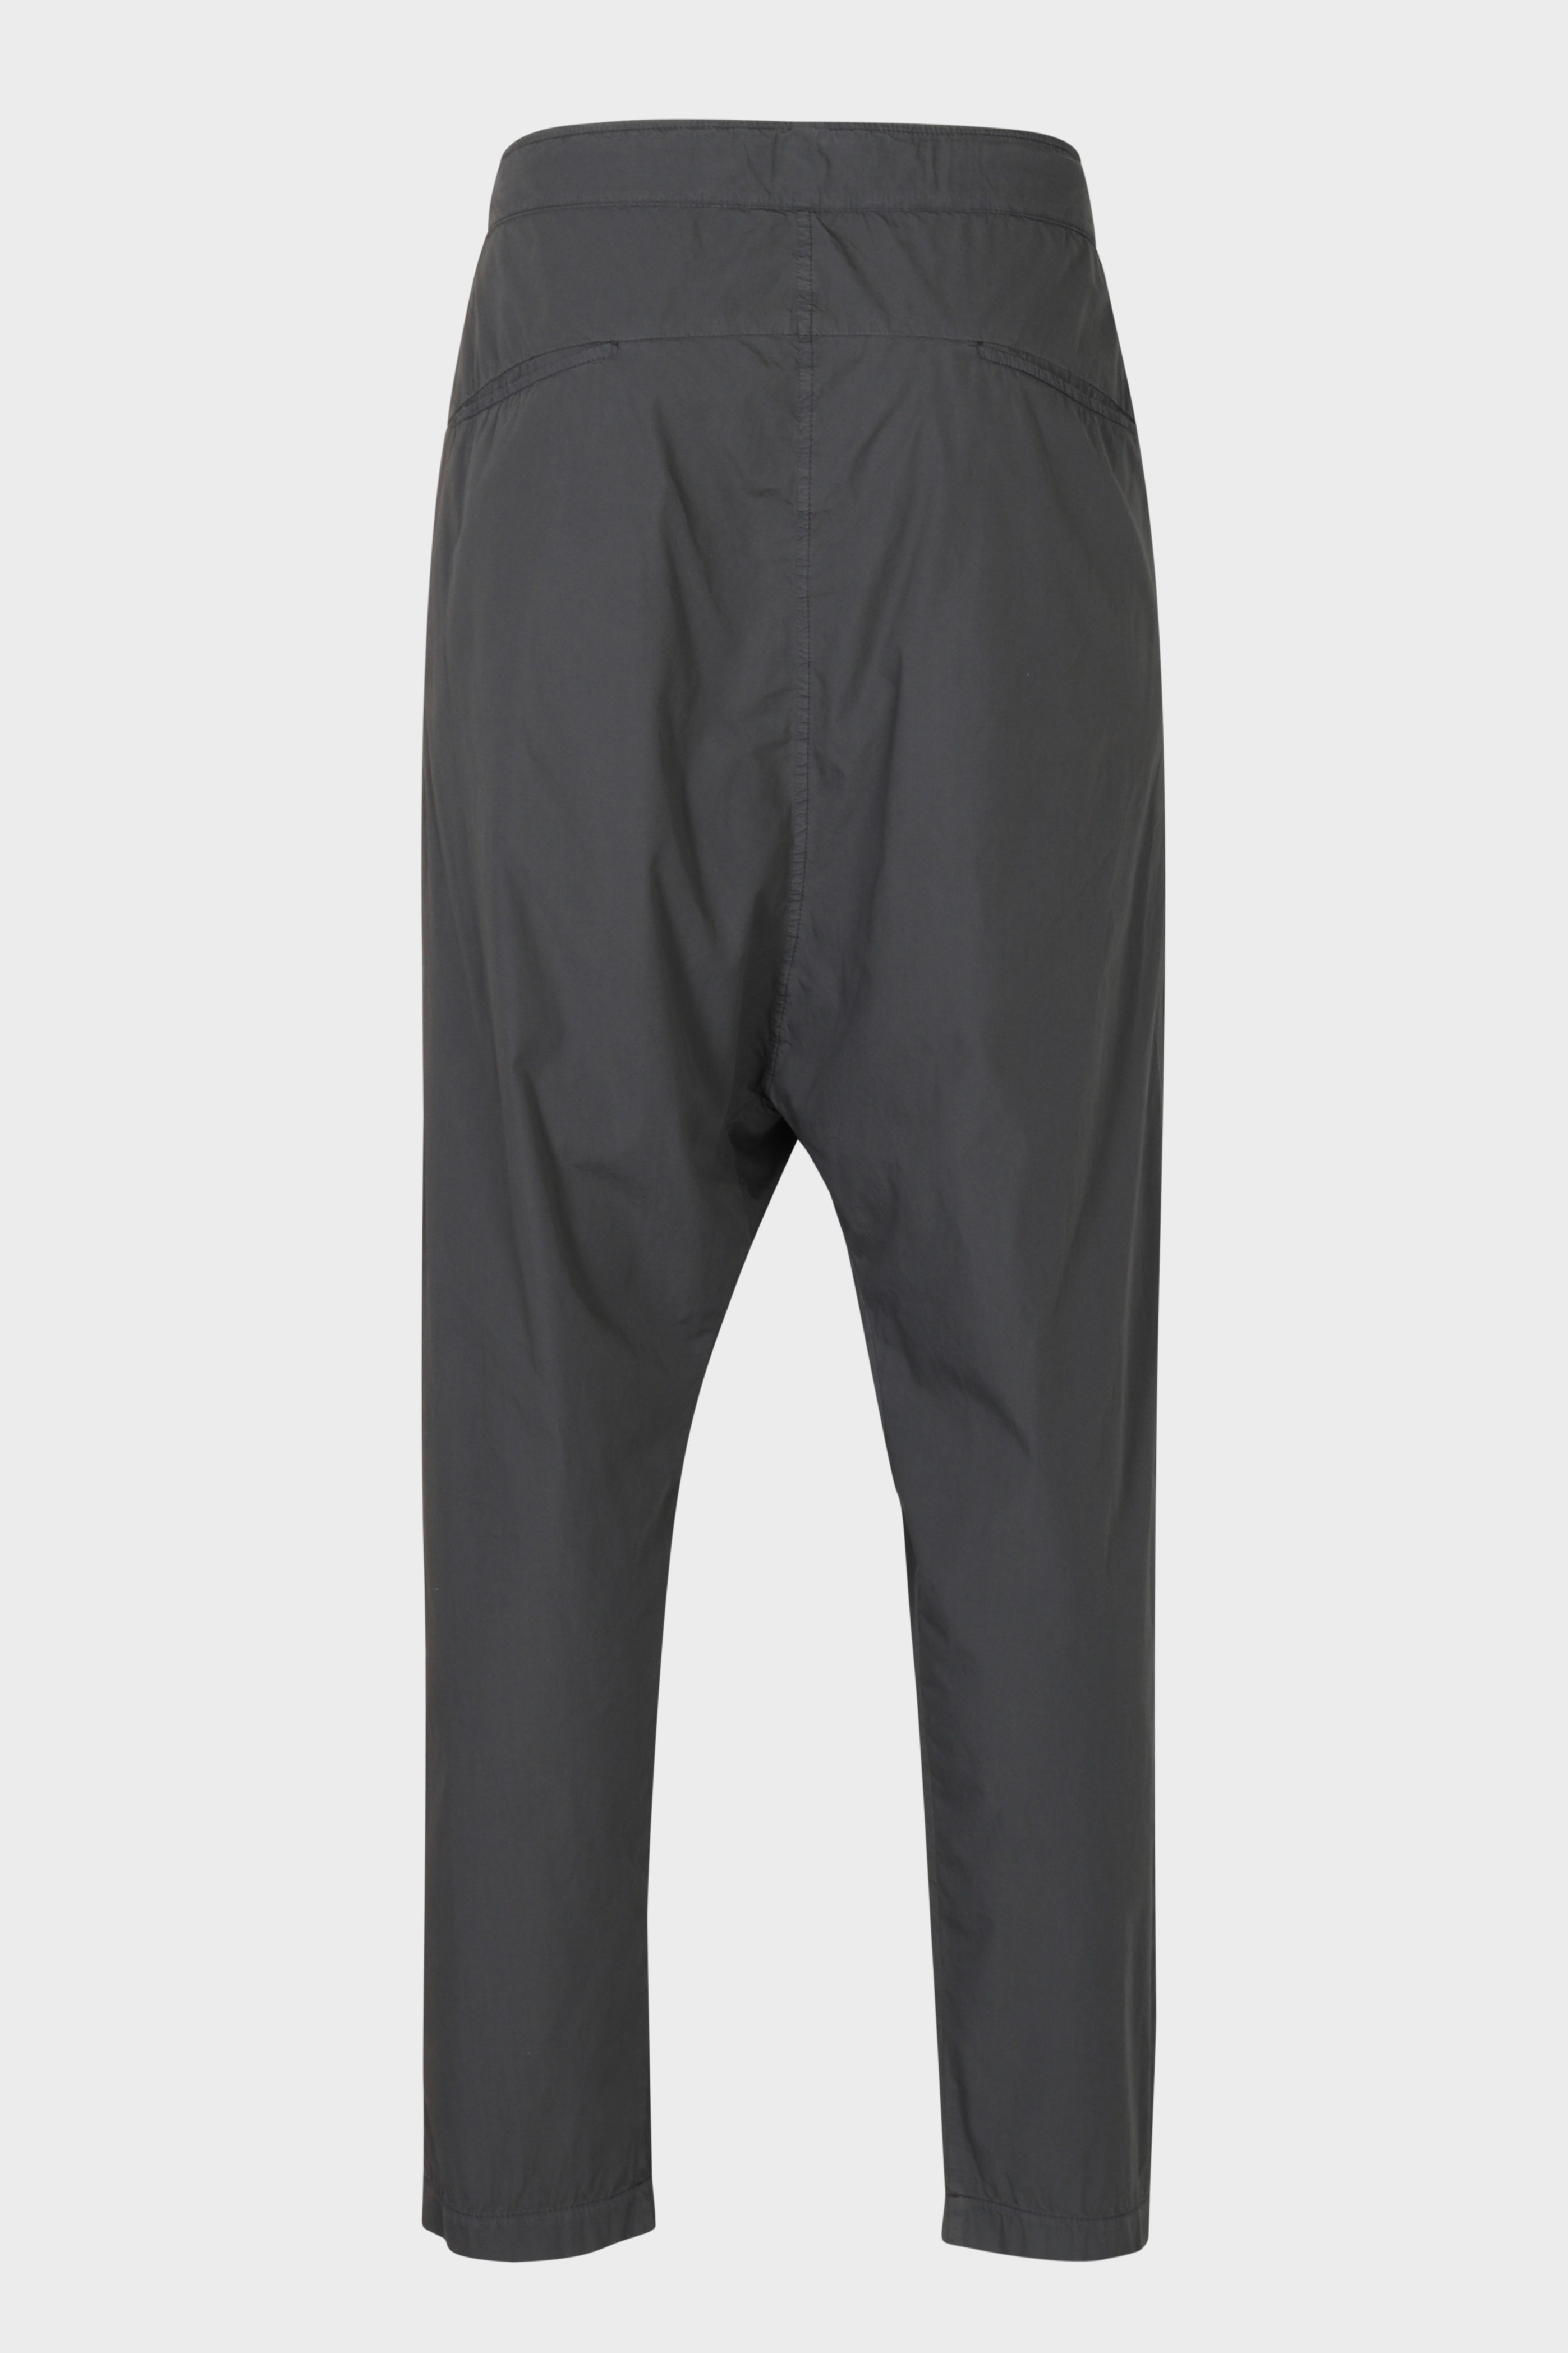 TRANSIT UOMO Light Cotton Pant in Dark Grey L